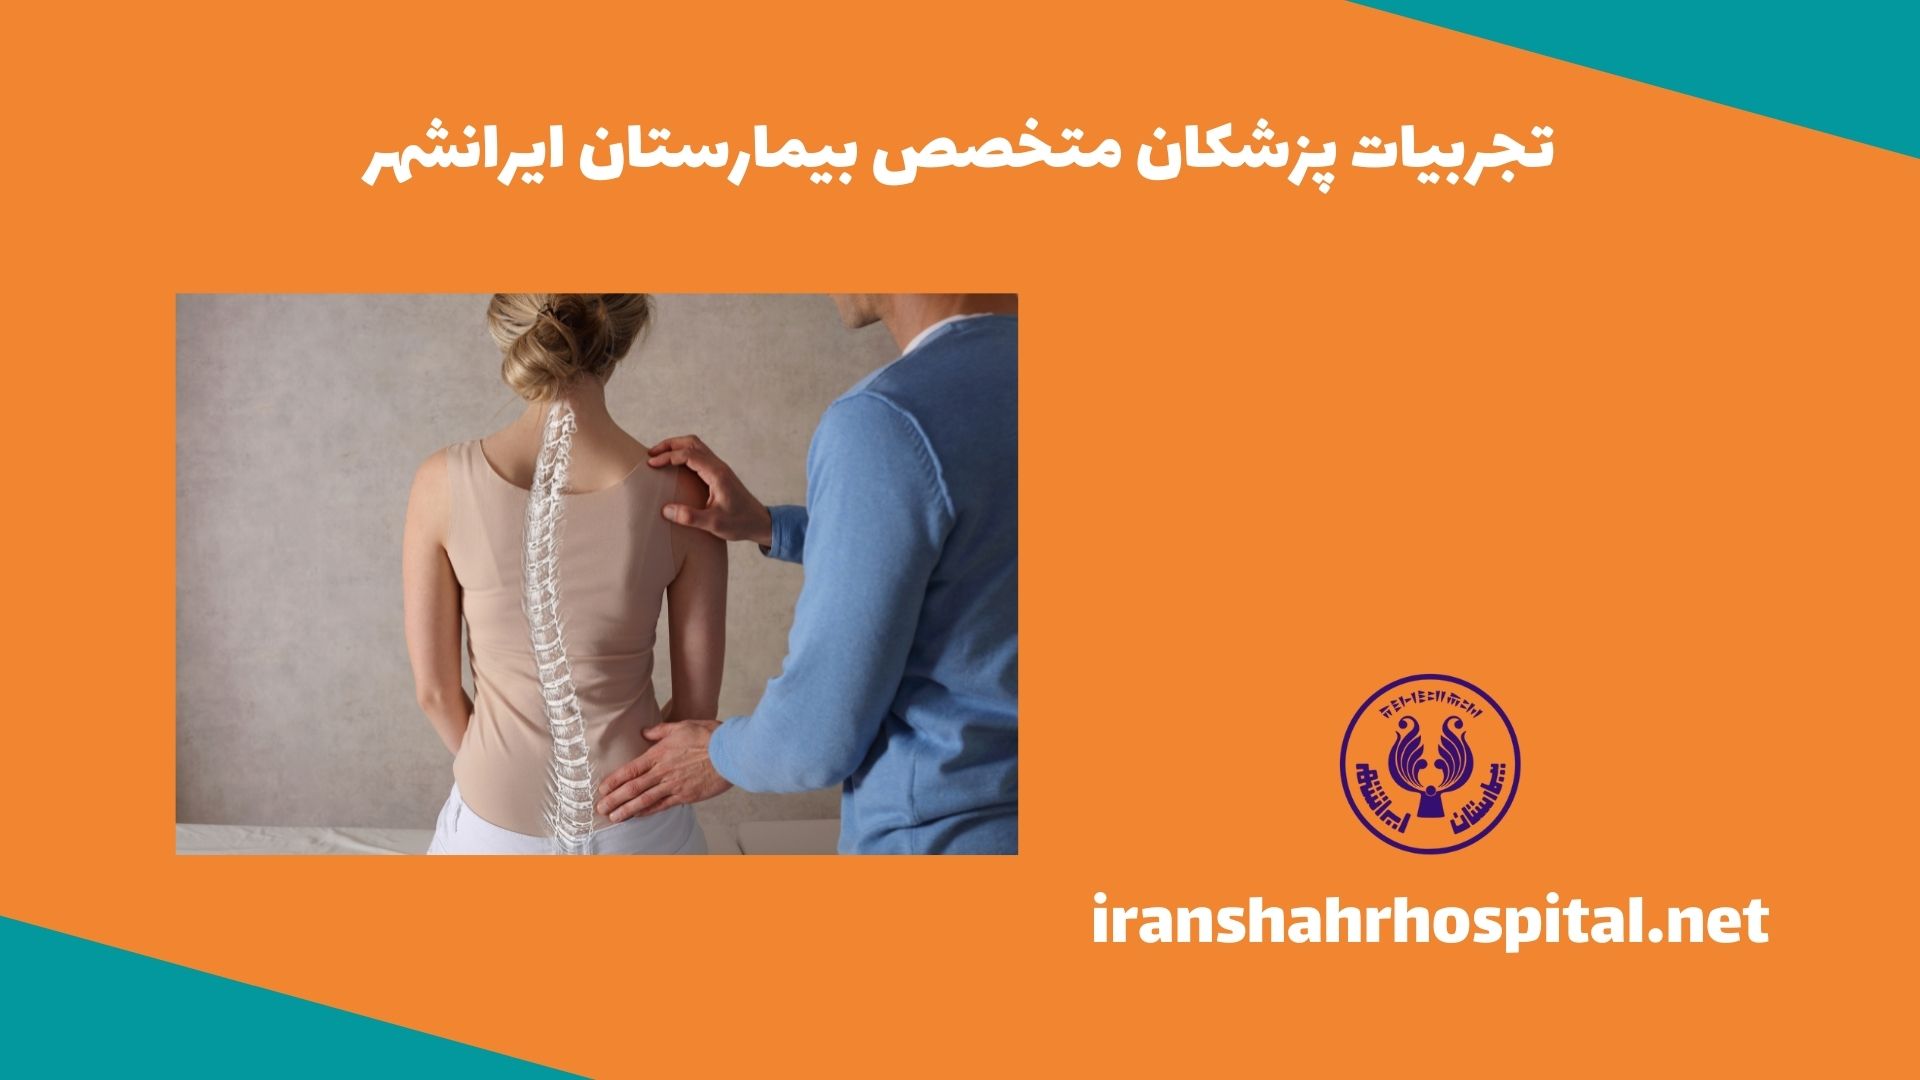 تجربیات پزشکان متخصص بیمارستان ایرانشهر